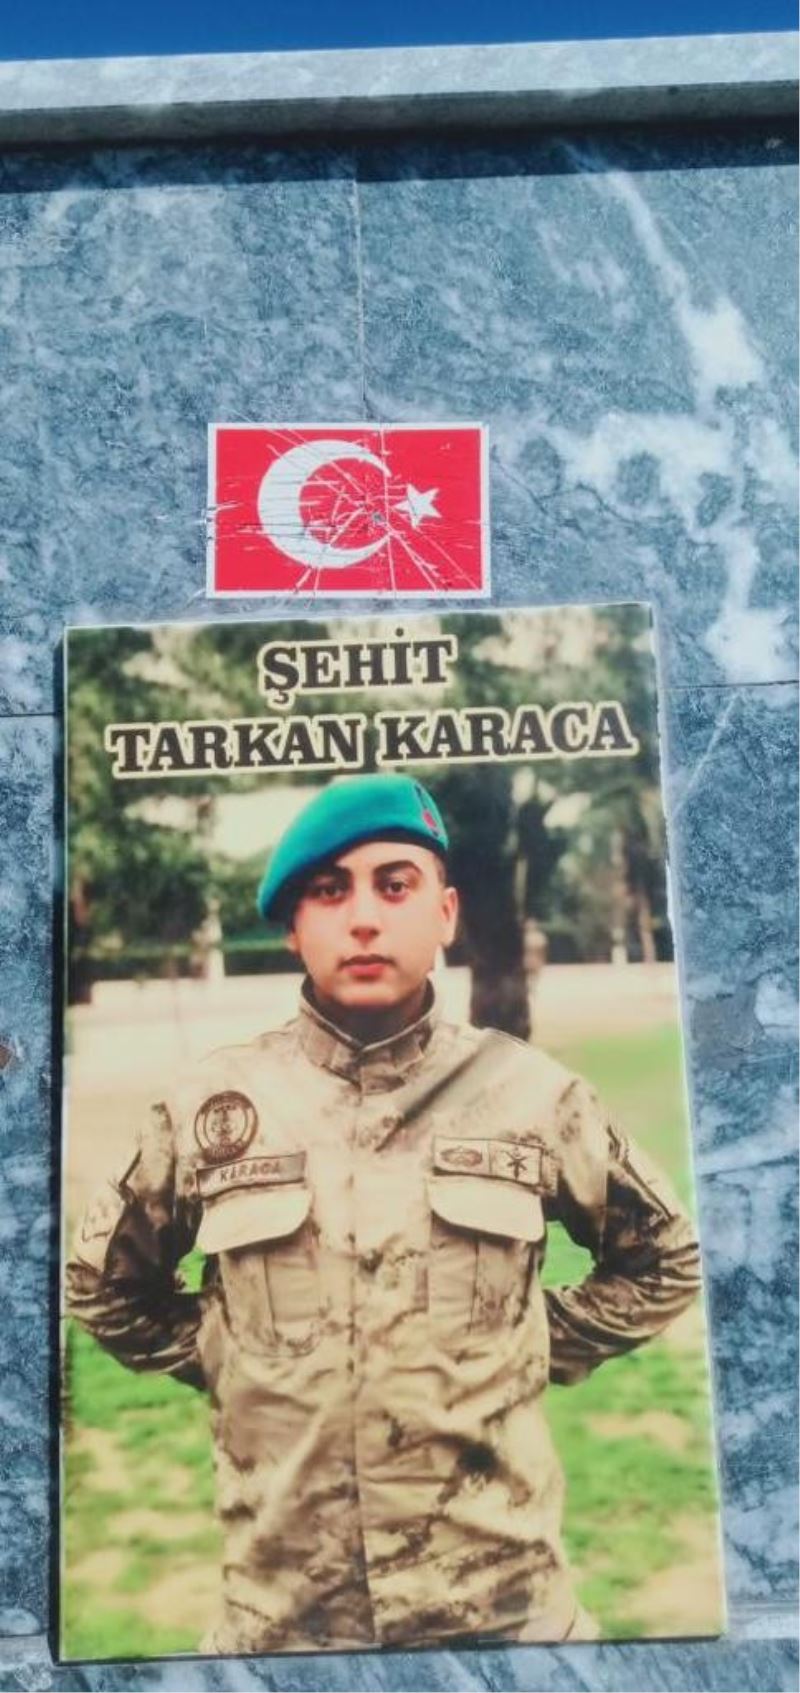 Şehidin hayrına yapılan çeşmedeki Türk bayrağına iğrenç saldırı
